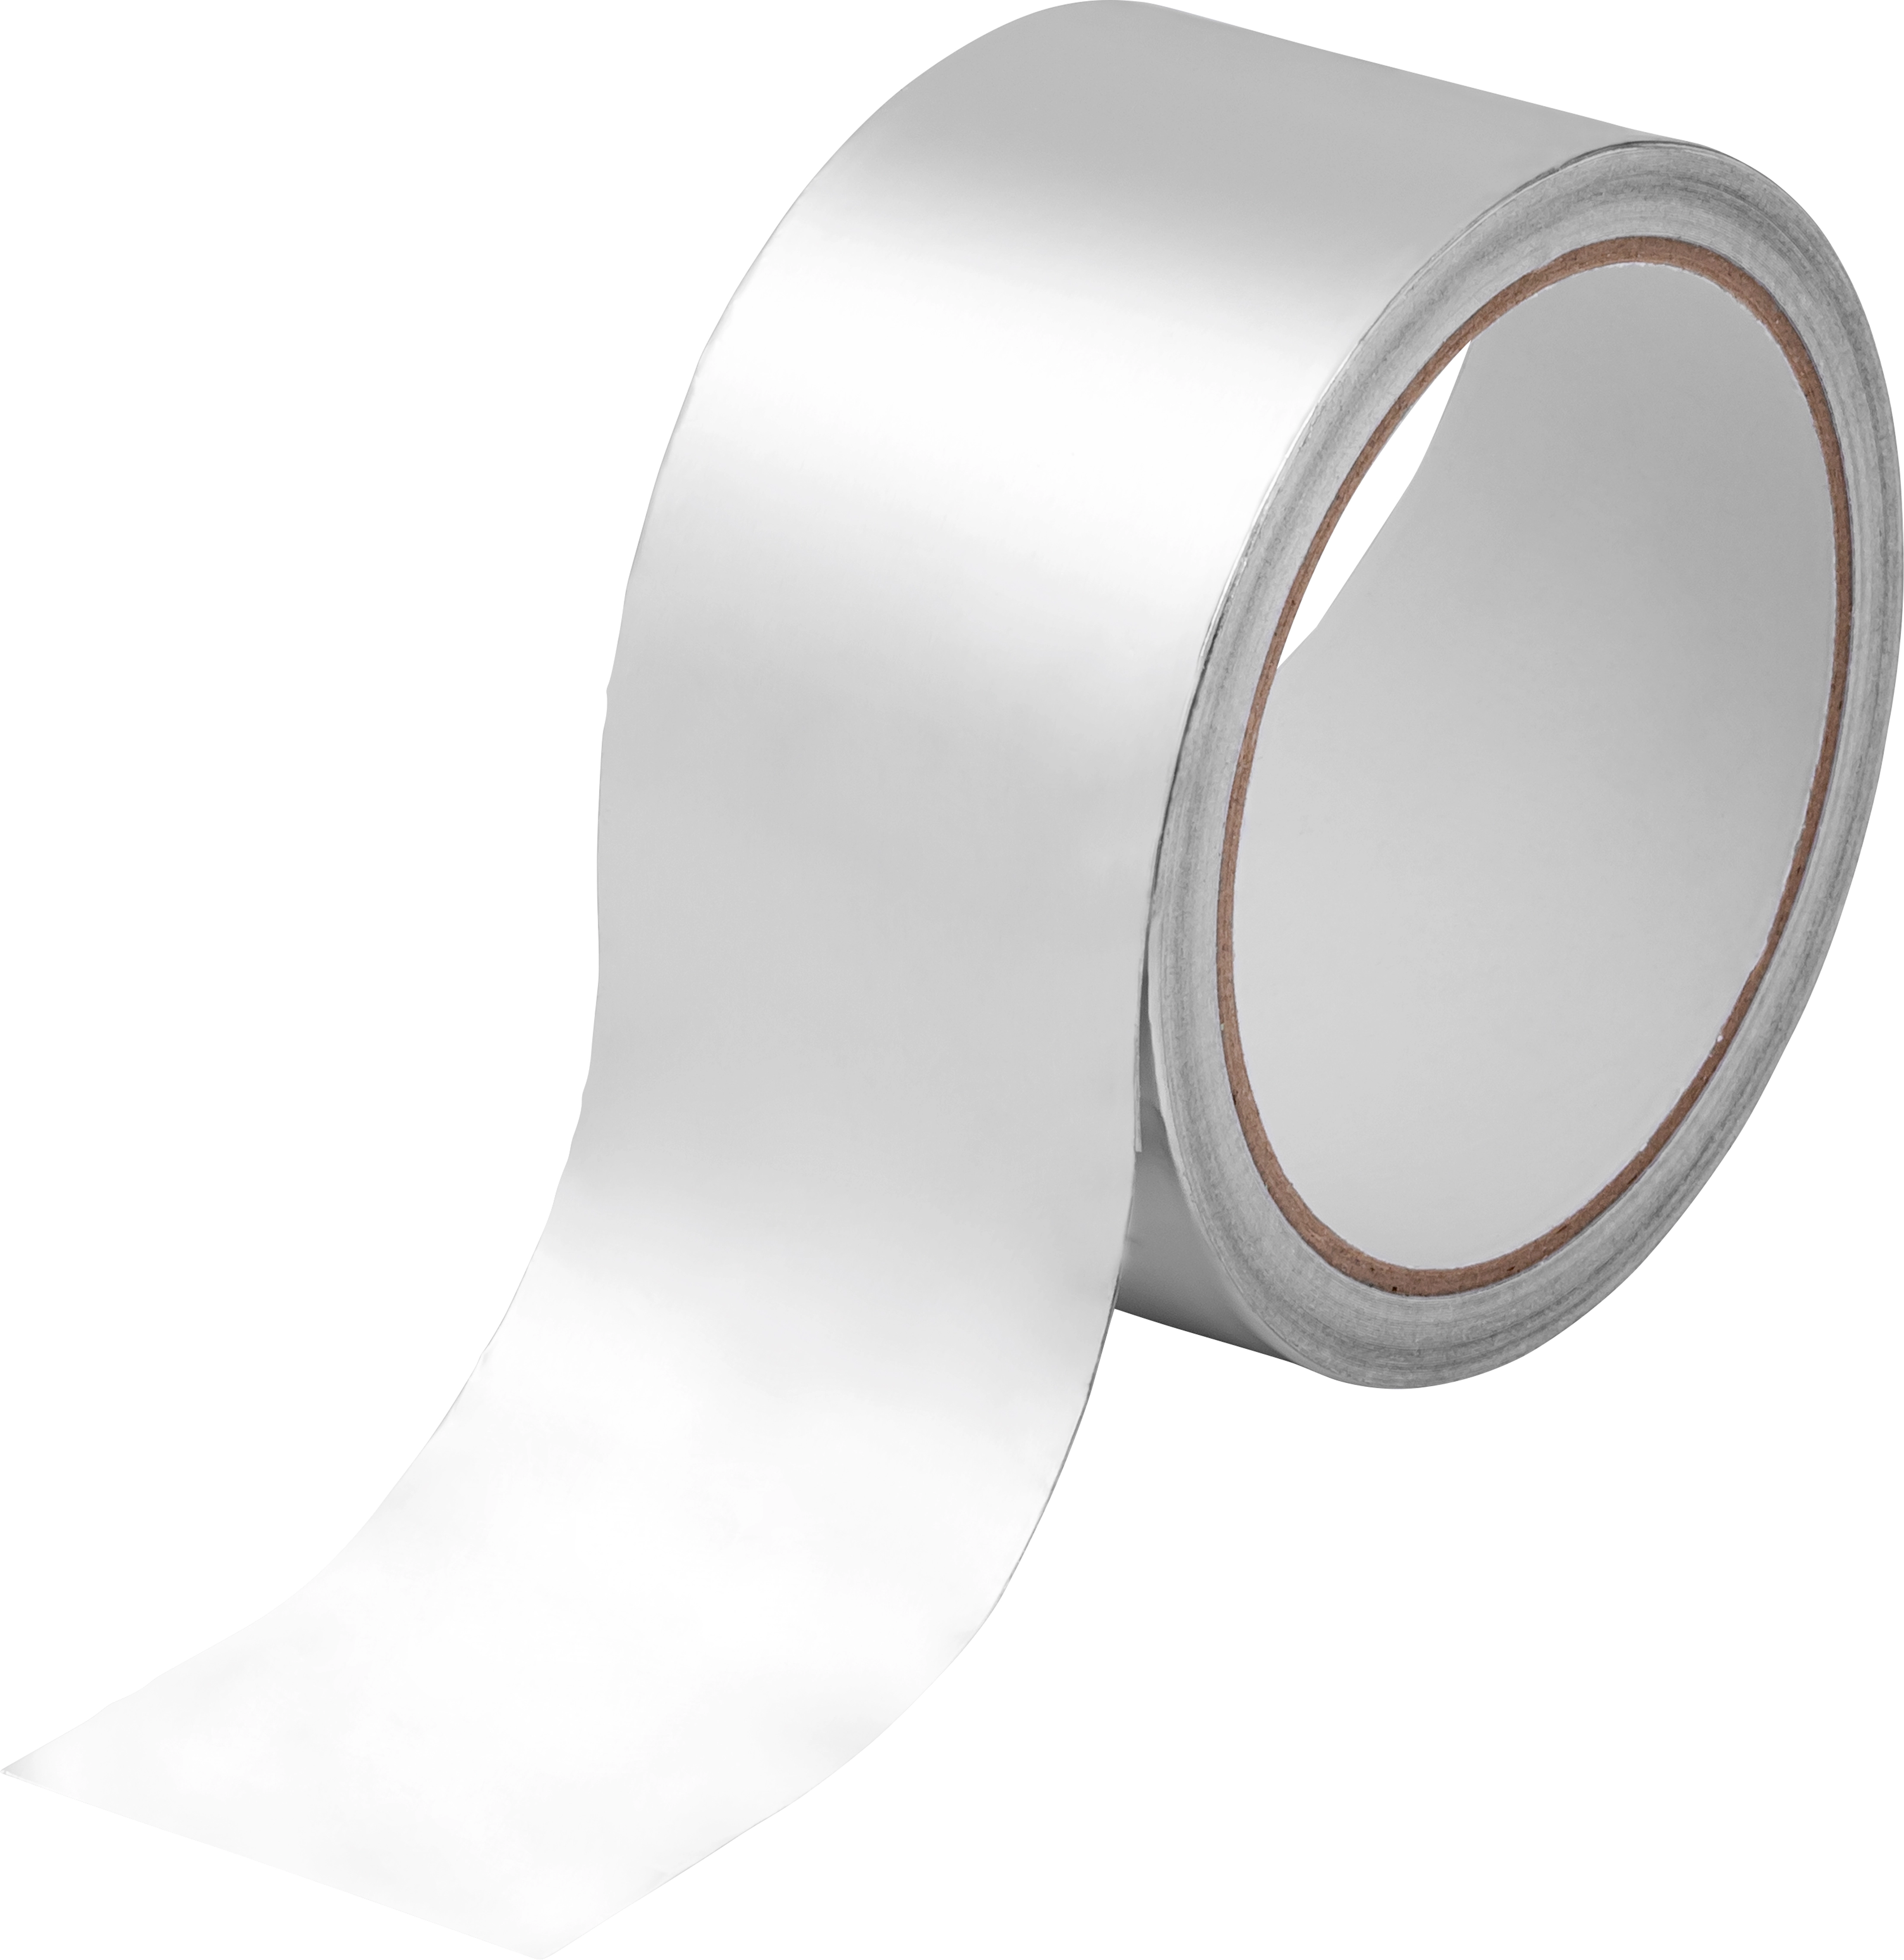 Alu-Klebeband papierkaschiert 50 mm kaufen bei OBI